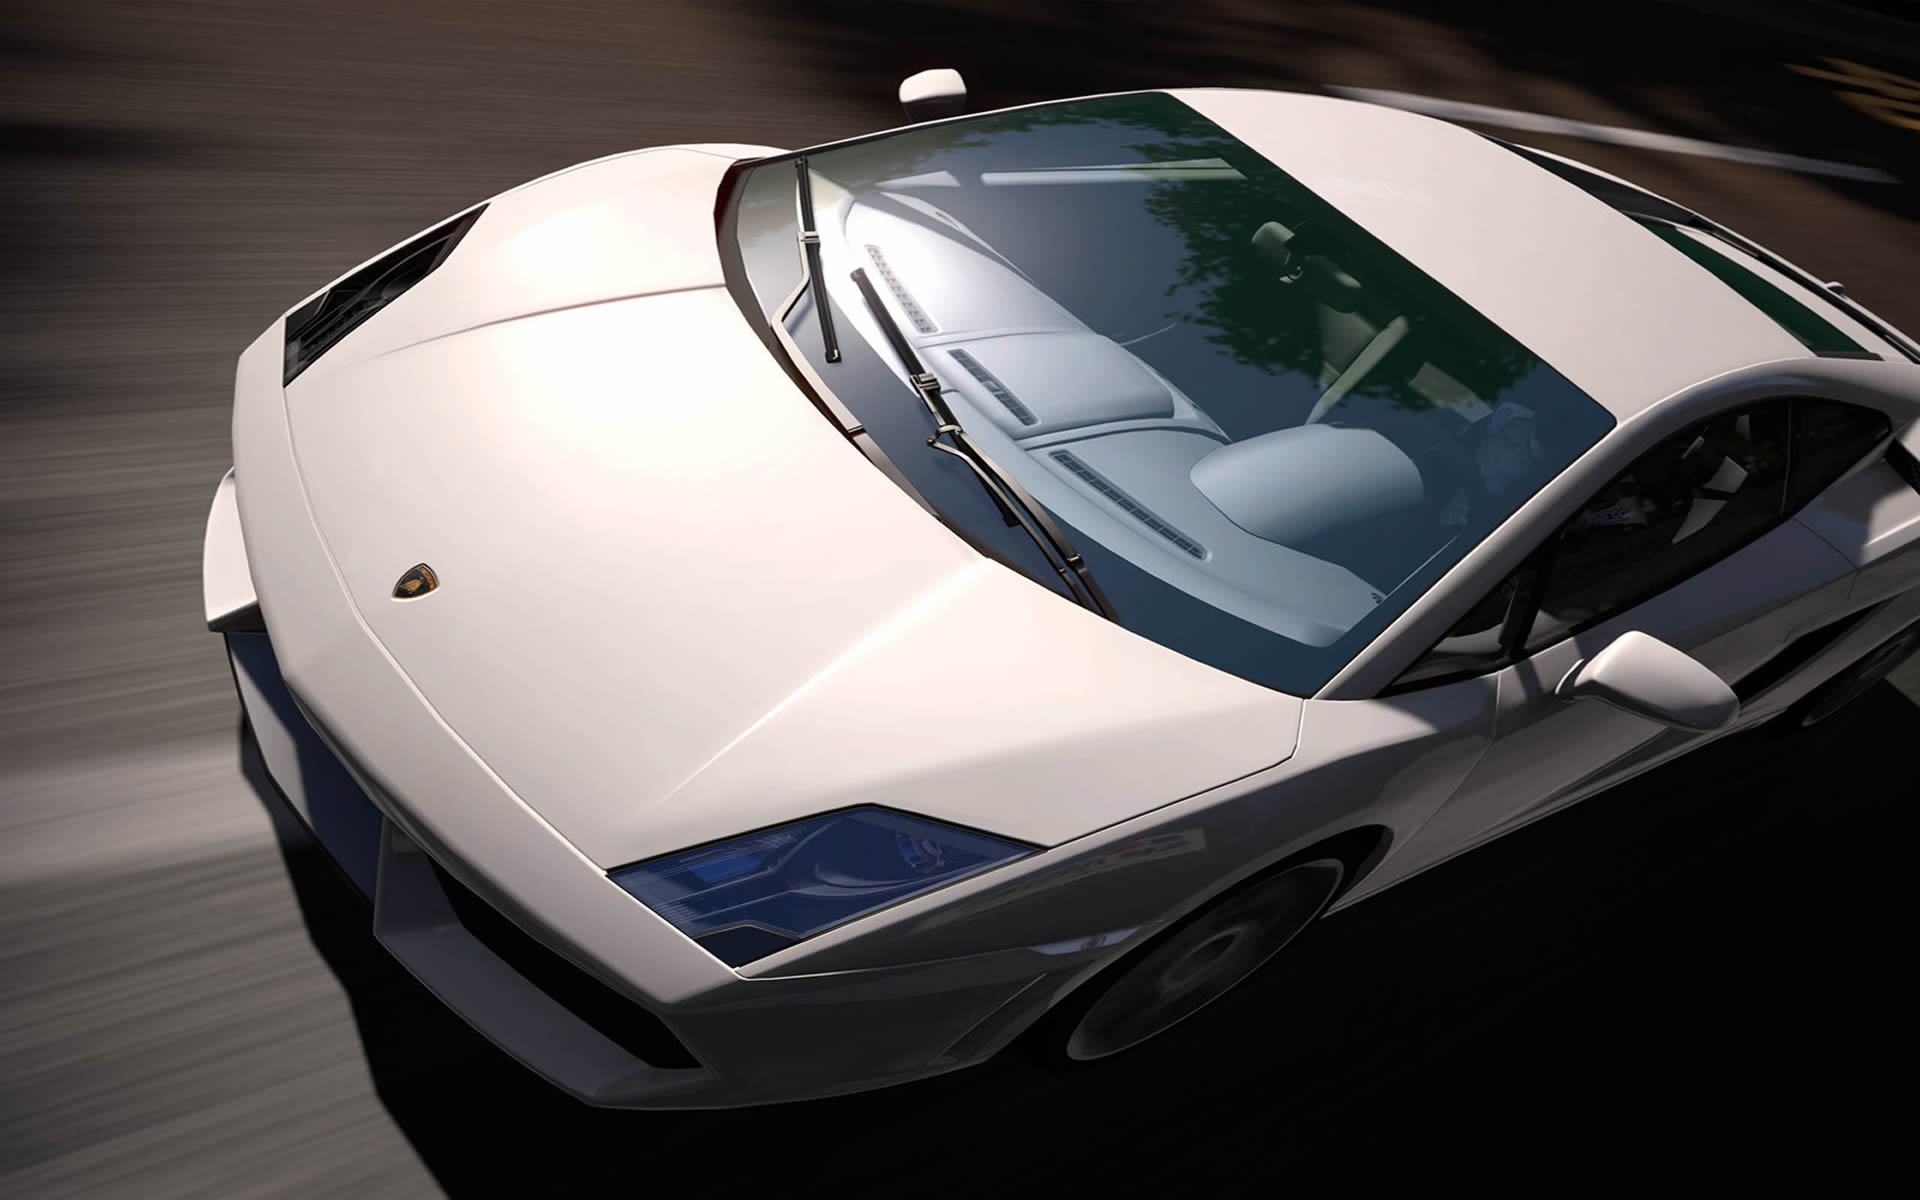 White Lamborghini Murcielago - Gran Turismo 5 Wallpaper Hd - HD Wallpaper 